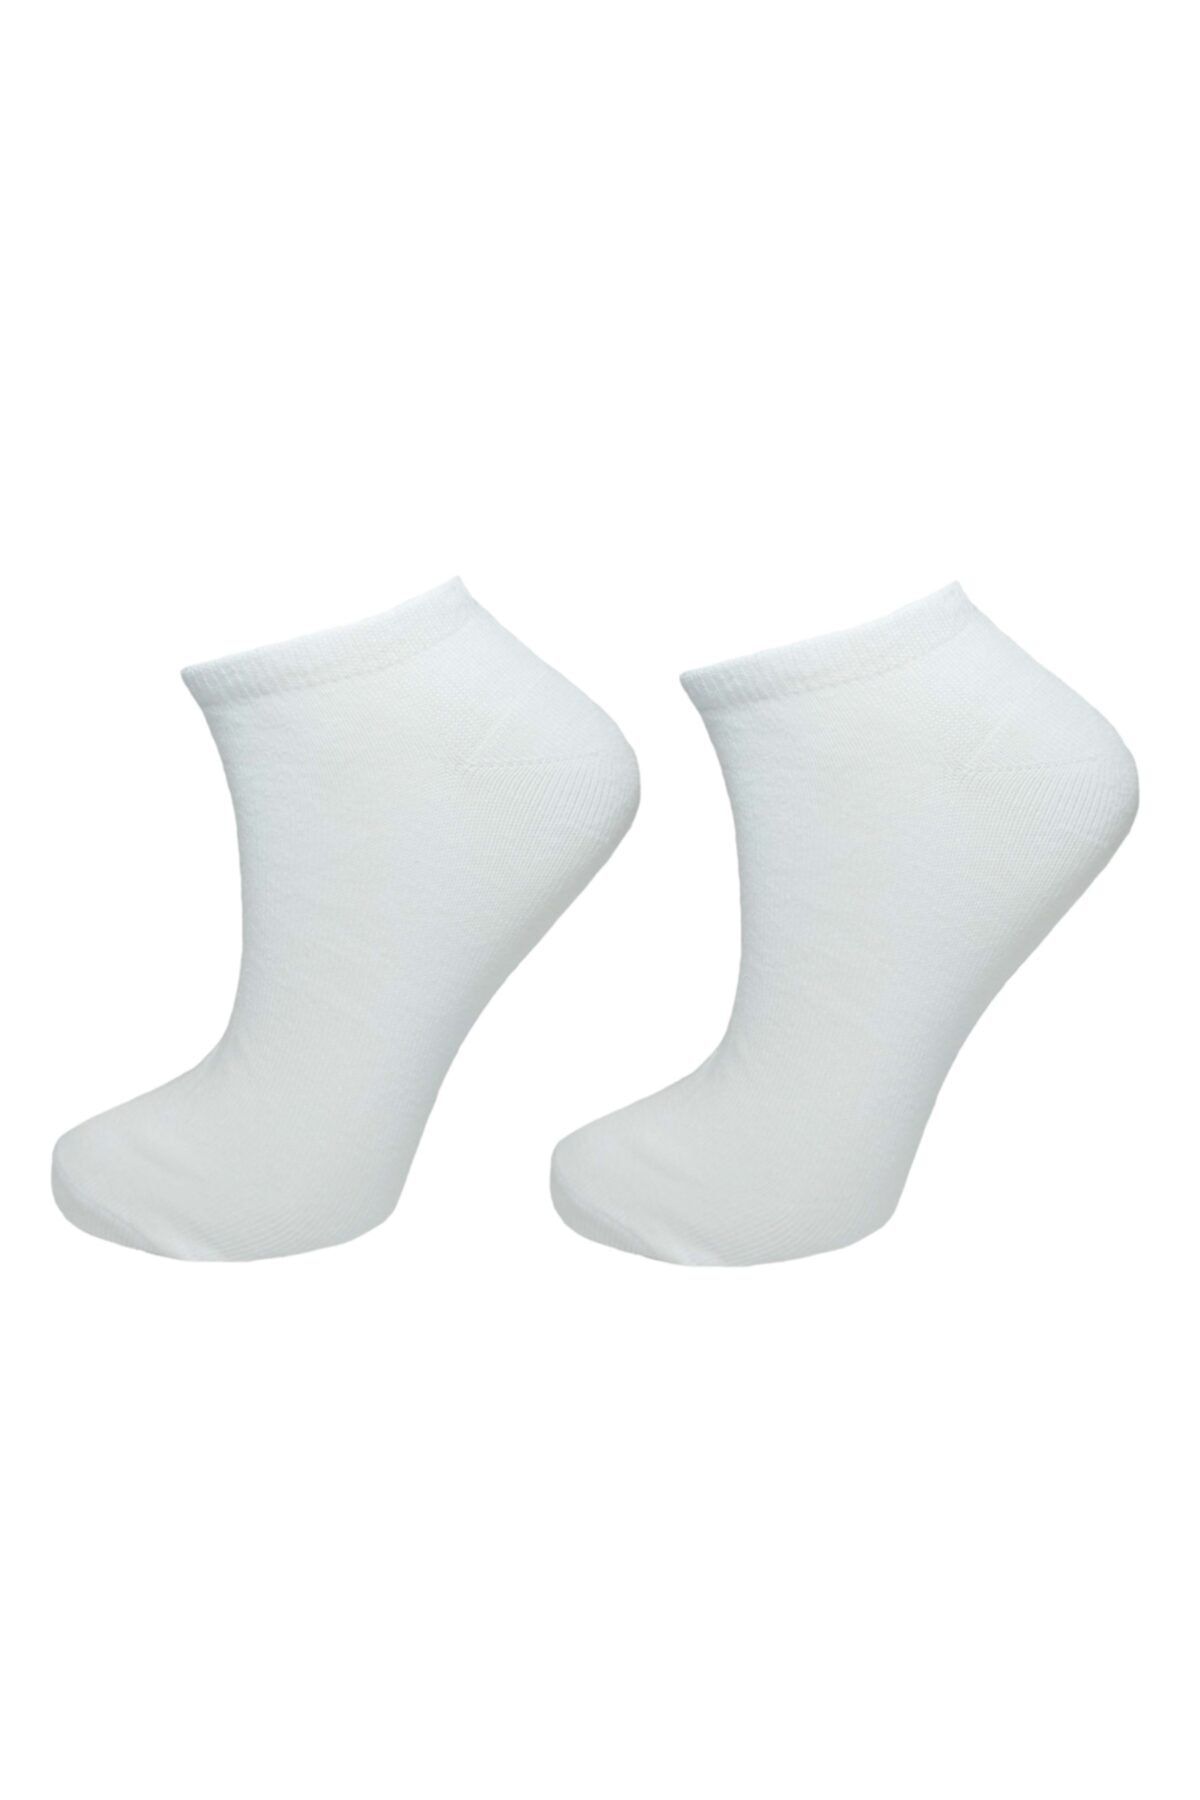 lara big socks 2'li Düz Beyaz Kadın Patik Çorap (36-40)